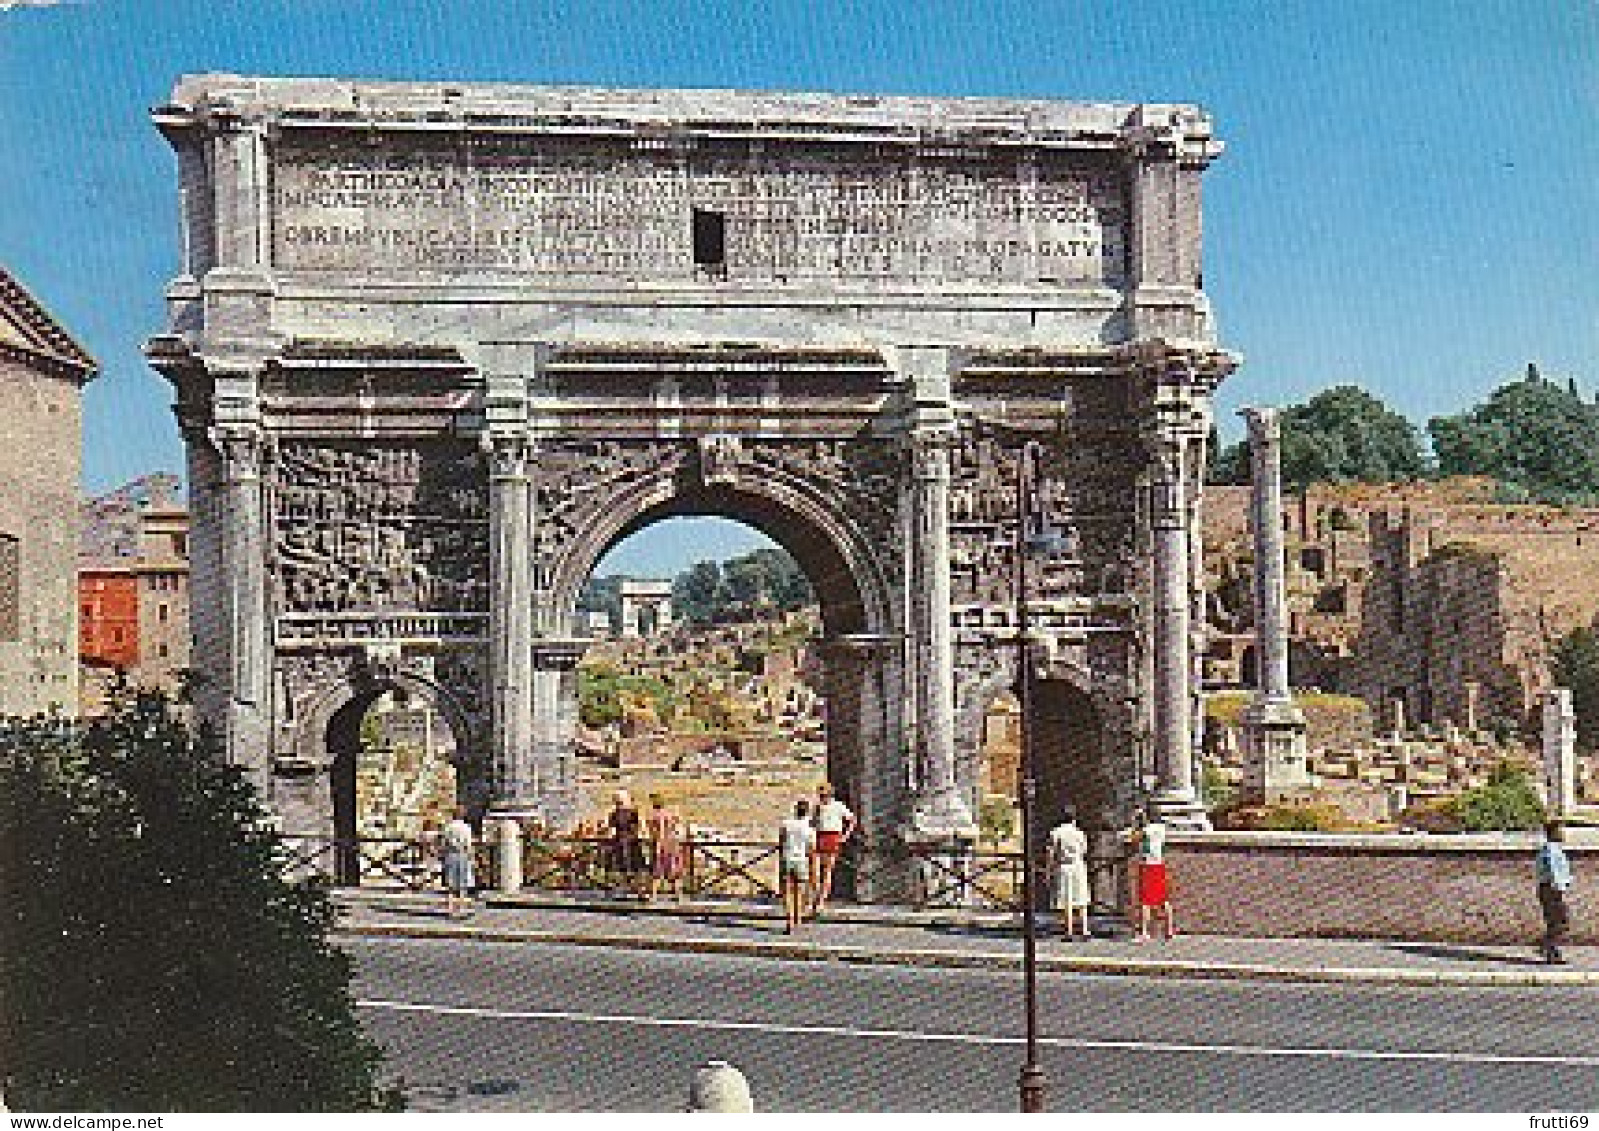 AK 216881 ITALY - Roma - Arco Di Settimo Severo - Andere Monumente & Gebäude